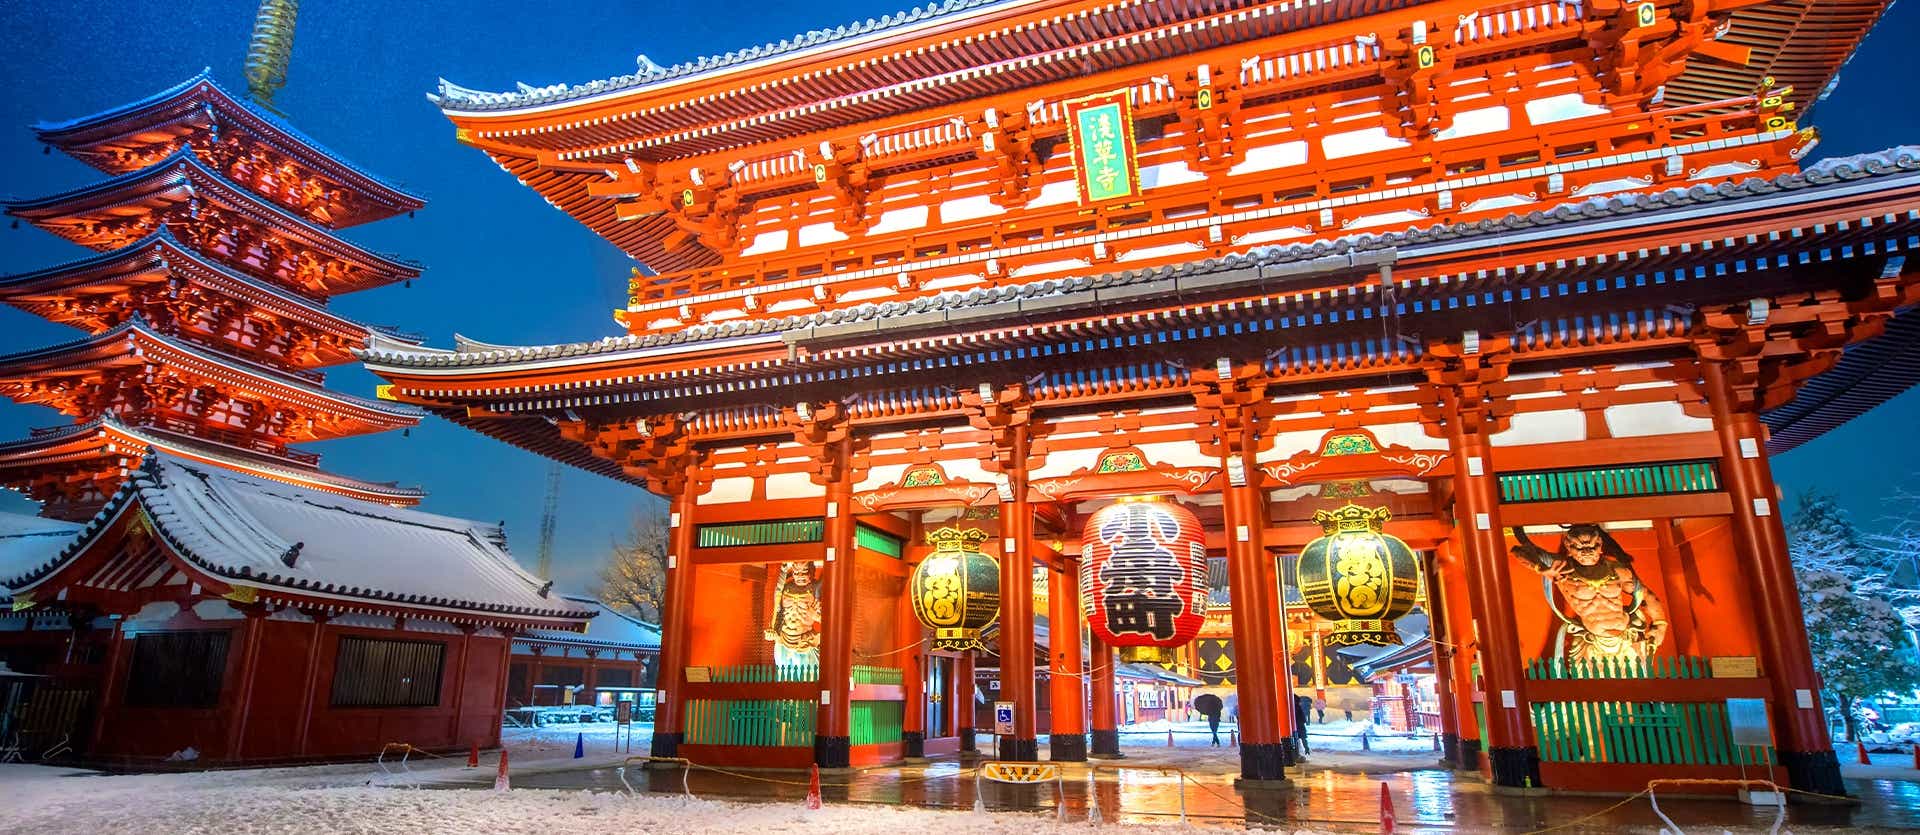 Asakusa Temple <span class="iconos separador"></span> Tokyo